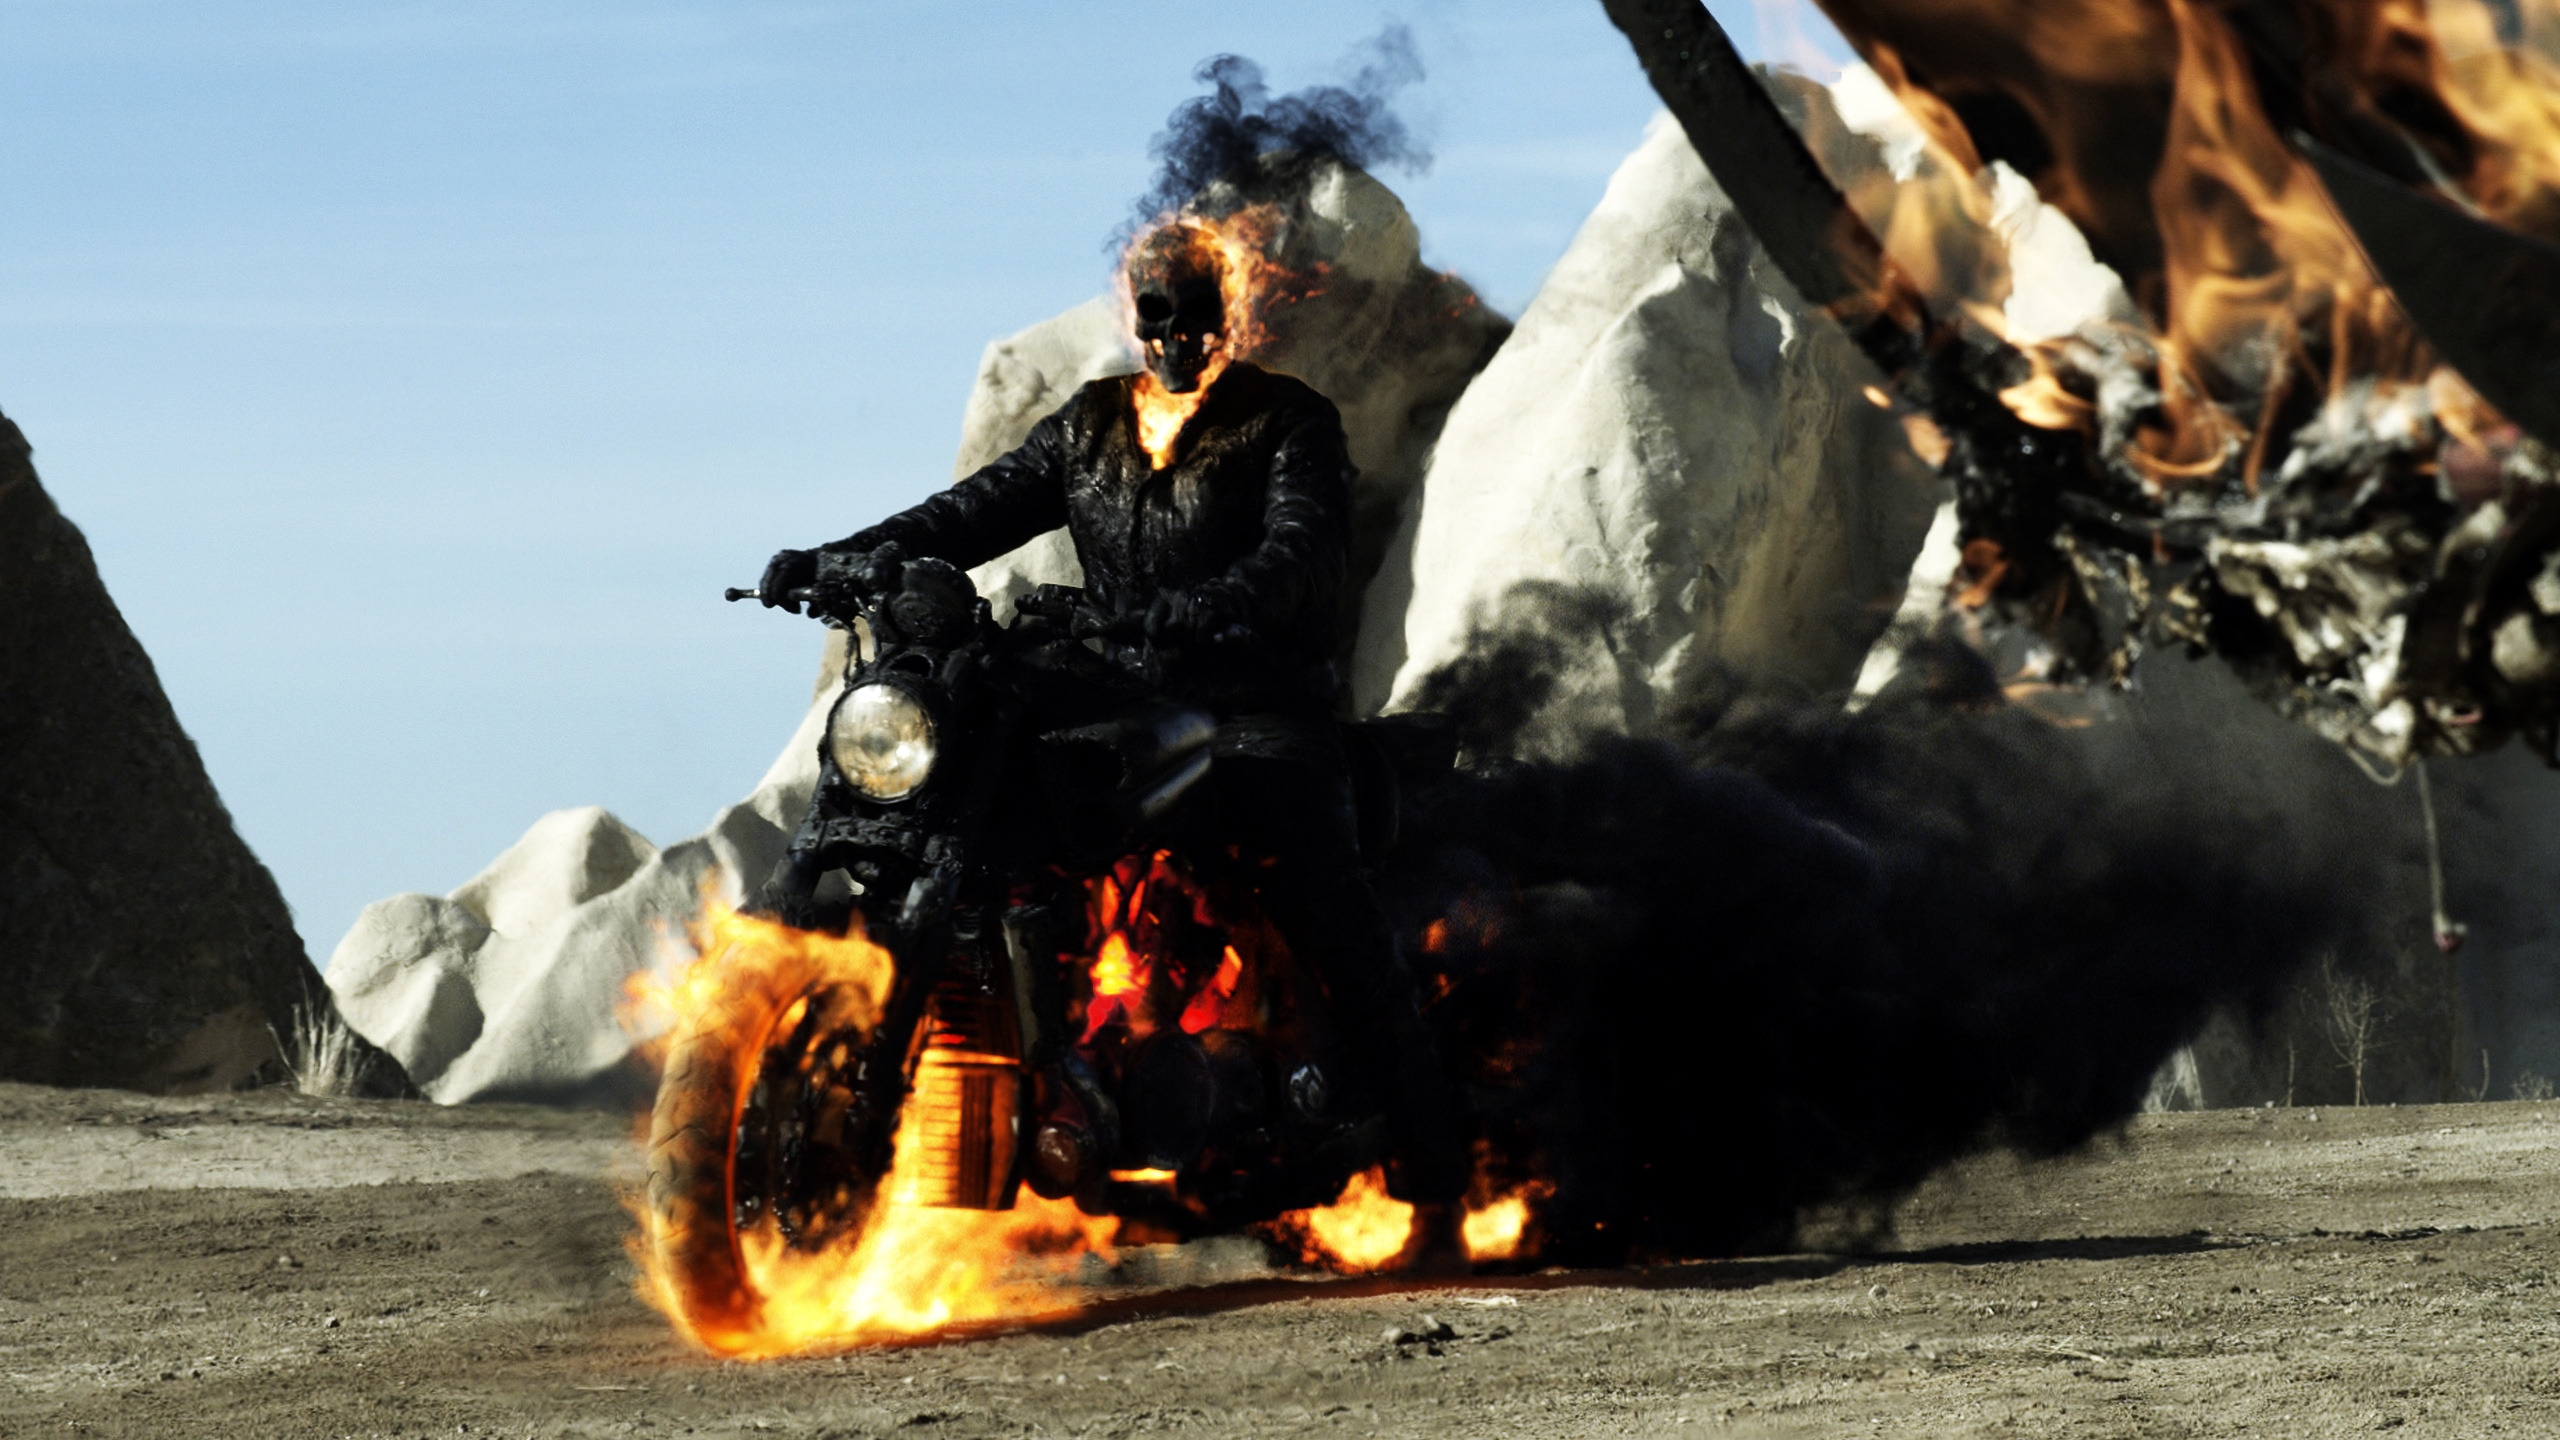 Ghost Rider Spirit of Vengeance 2012 for 2560x1440 HDTV resolution